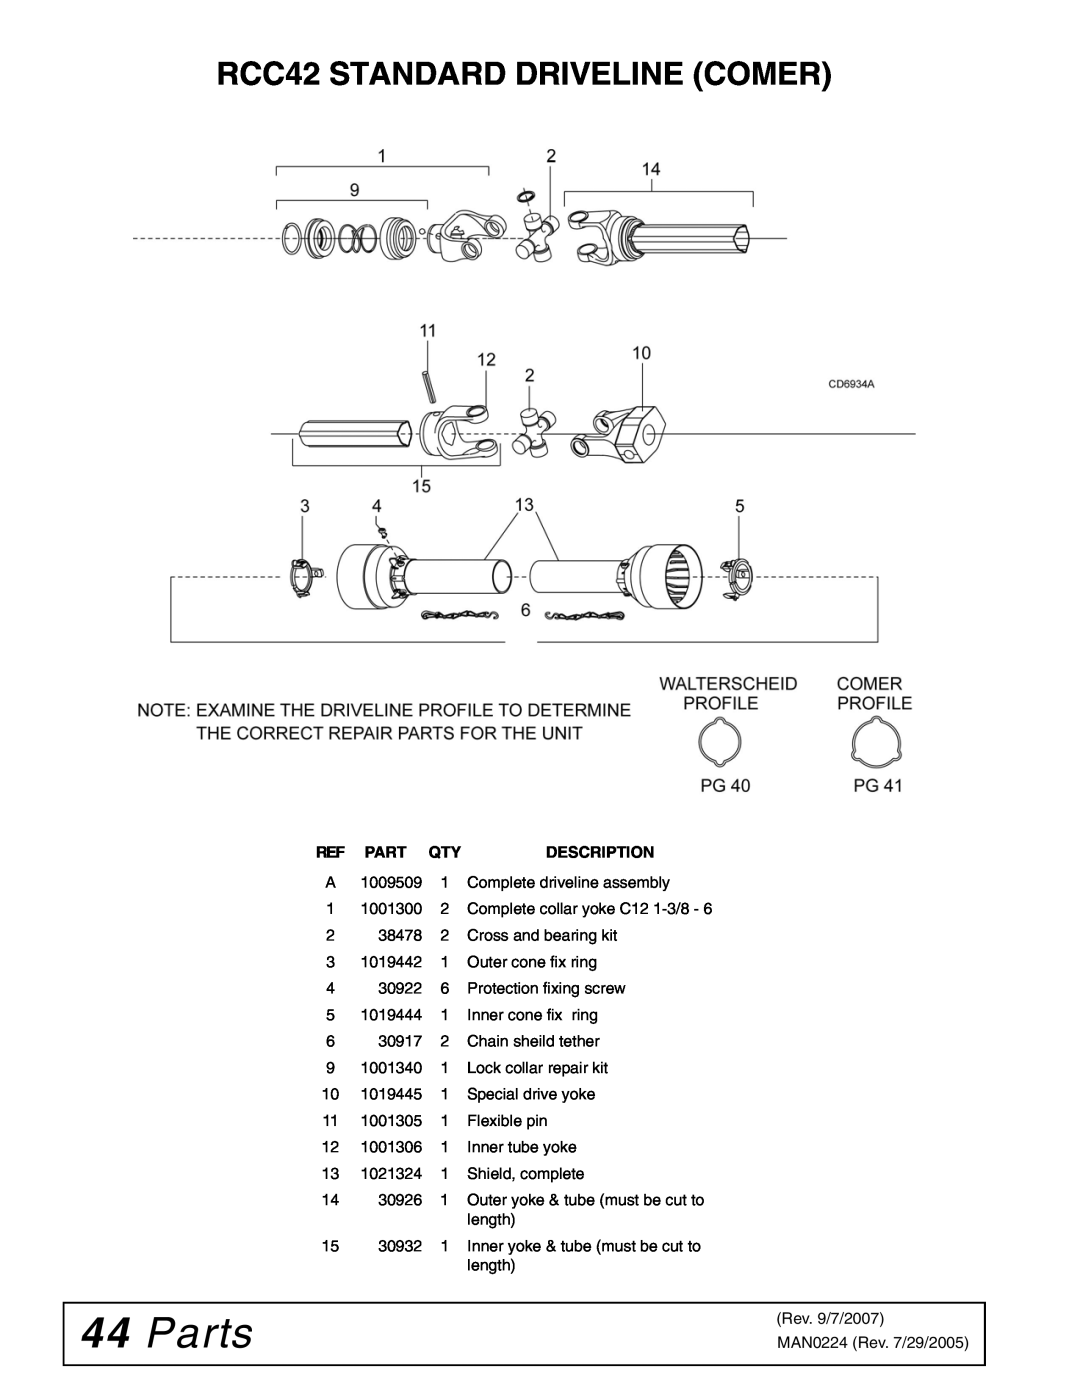 Woods Equipment manual 44Parts, RCC42 STANDARD DRIVELINE COMER, Description 